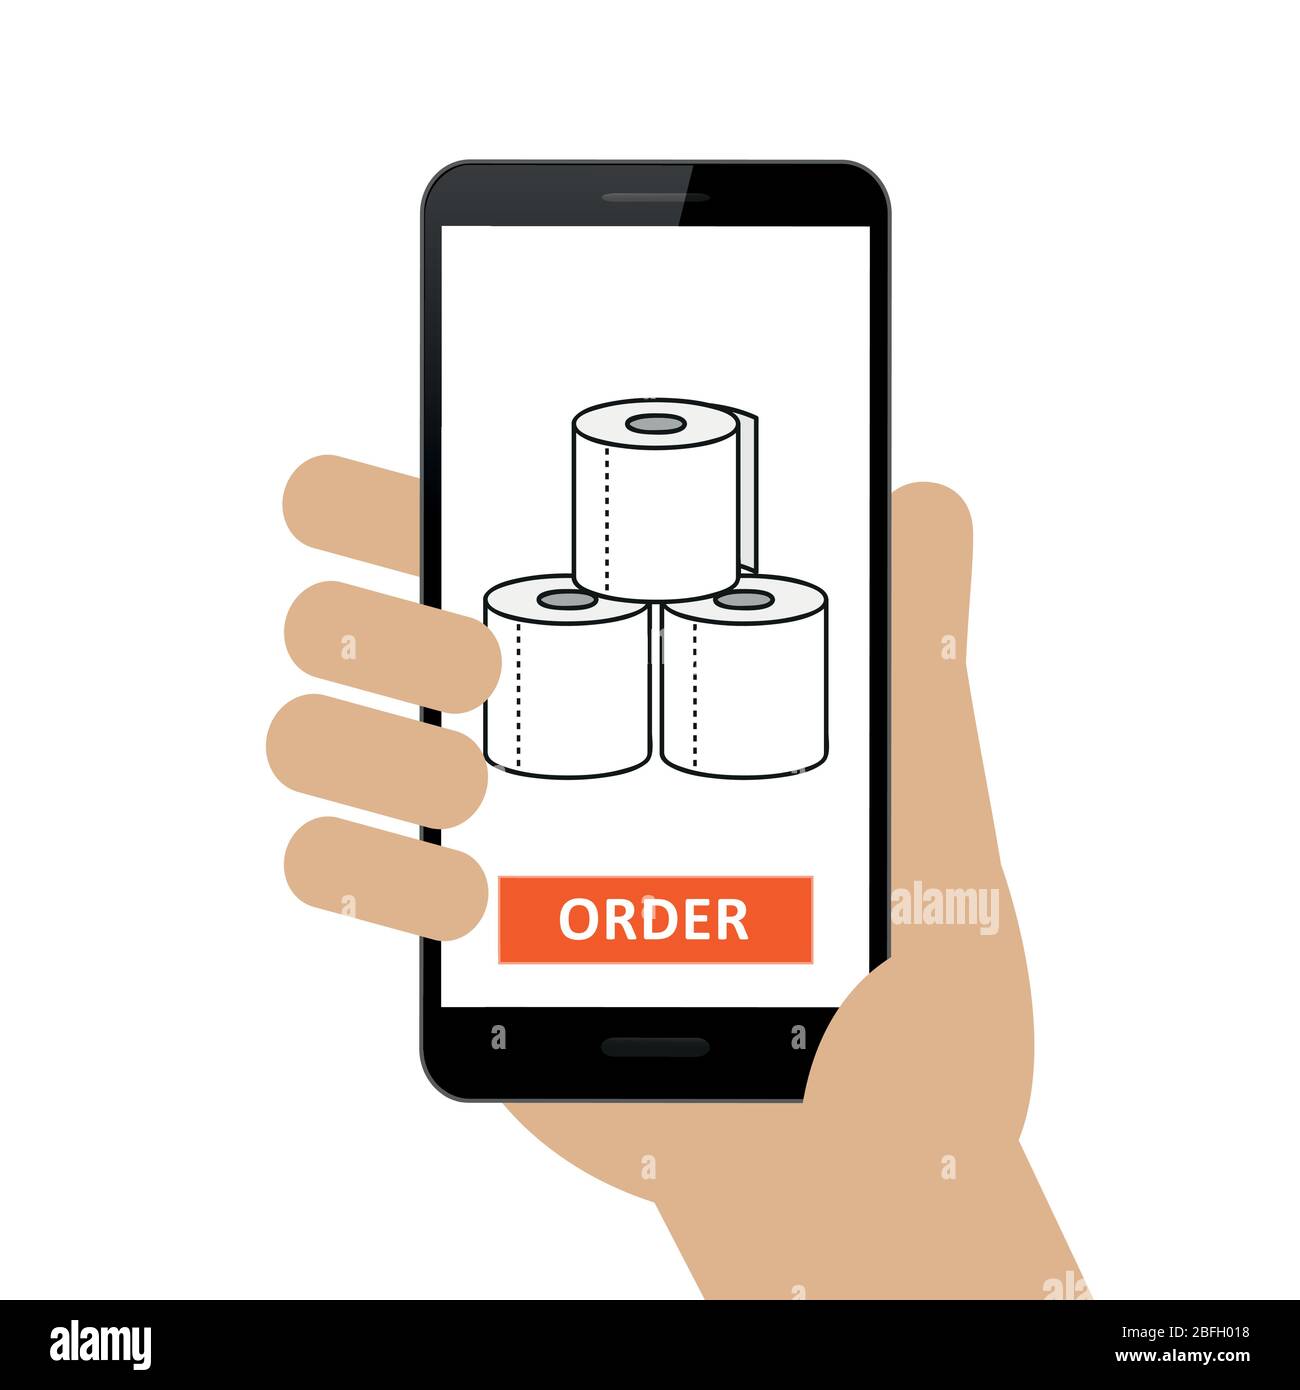 Personne a commandé du papier toilette en ligne via l'illustration vectorielle de smartphone EPS10 Illustration de Vecteur